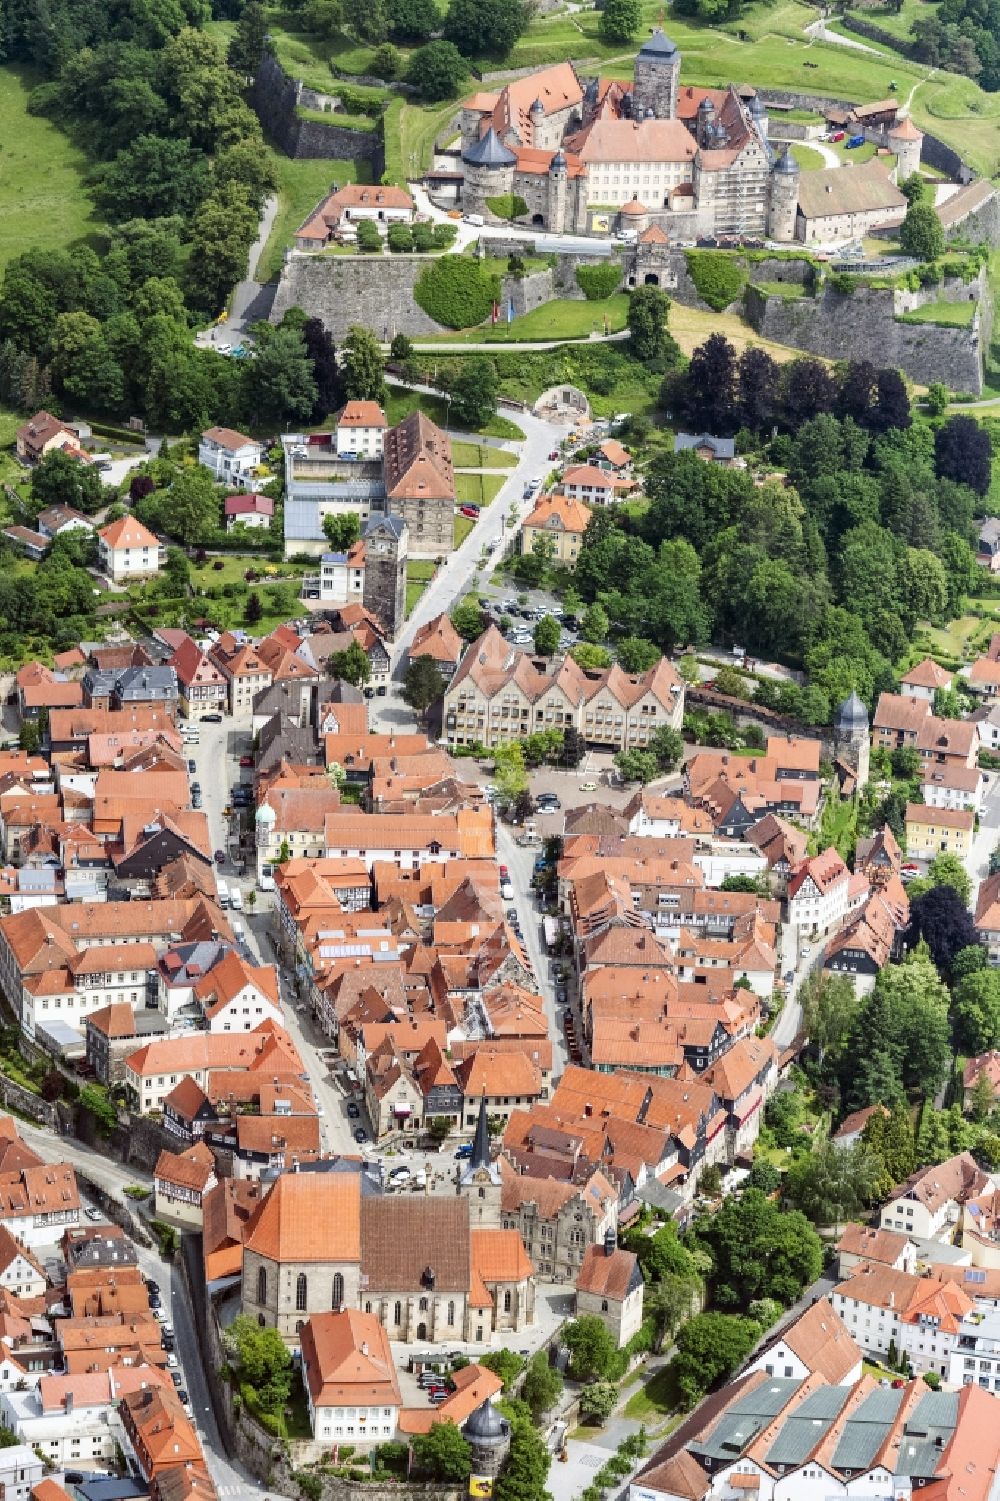 Kronach von oben - Altstadtbereich und Innenstadtzentrum in Kronach im Bundesland Bayern, Deutschland